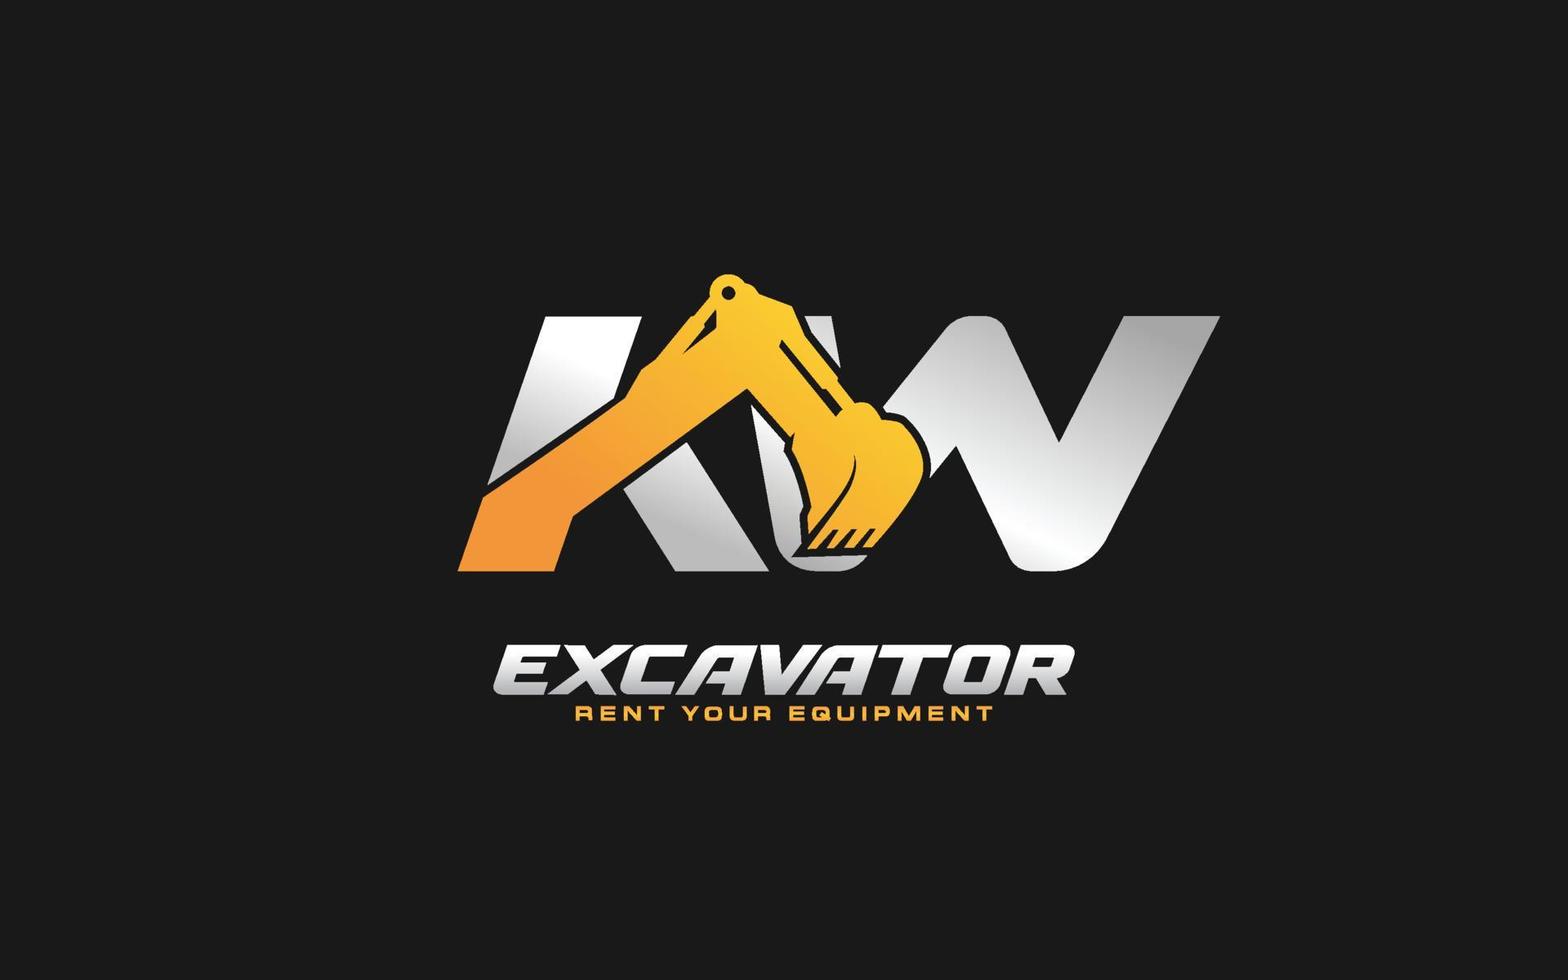 kw logo escavadeira para construtora. ilustração vetorial de modelo de equipamento pesado para sua marca. vetor